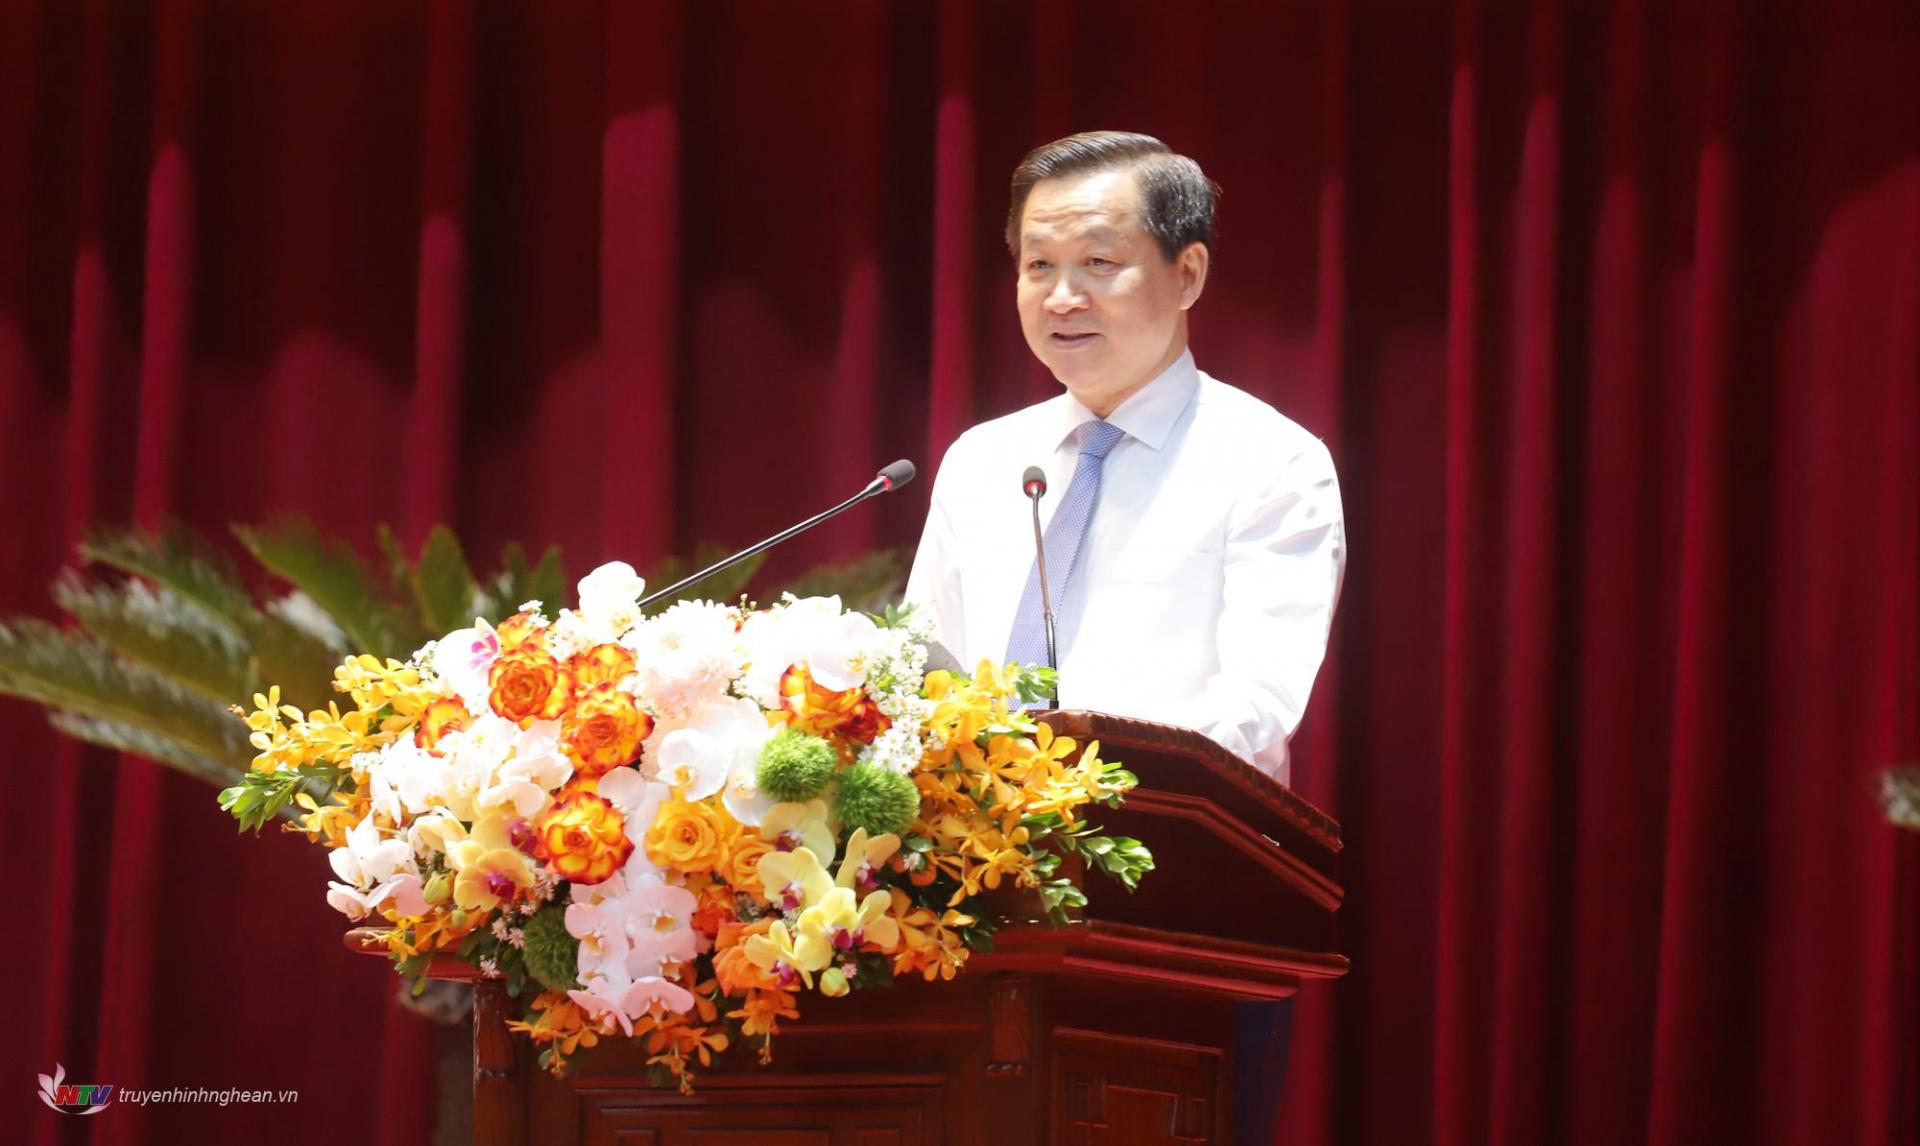 Đồng chí Lê Minh Khái - Bí thư Trung ương Đảng, Phó Thủ tướng Chính phủ trình bày dự thảo Chương trình hành động của Chính phủ thực hiện Nghị quyết số 39-NQ/TW của Bộ Chính trị về xây dựng và phát triển tỉnh Nghệ An đến năm 2030, tầm nhìn đến năm 2045.